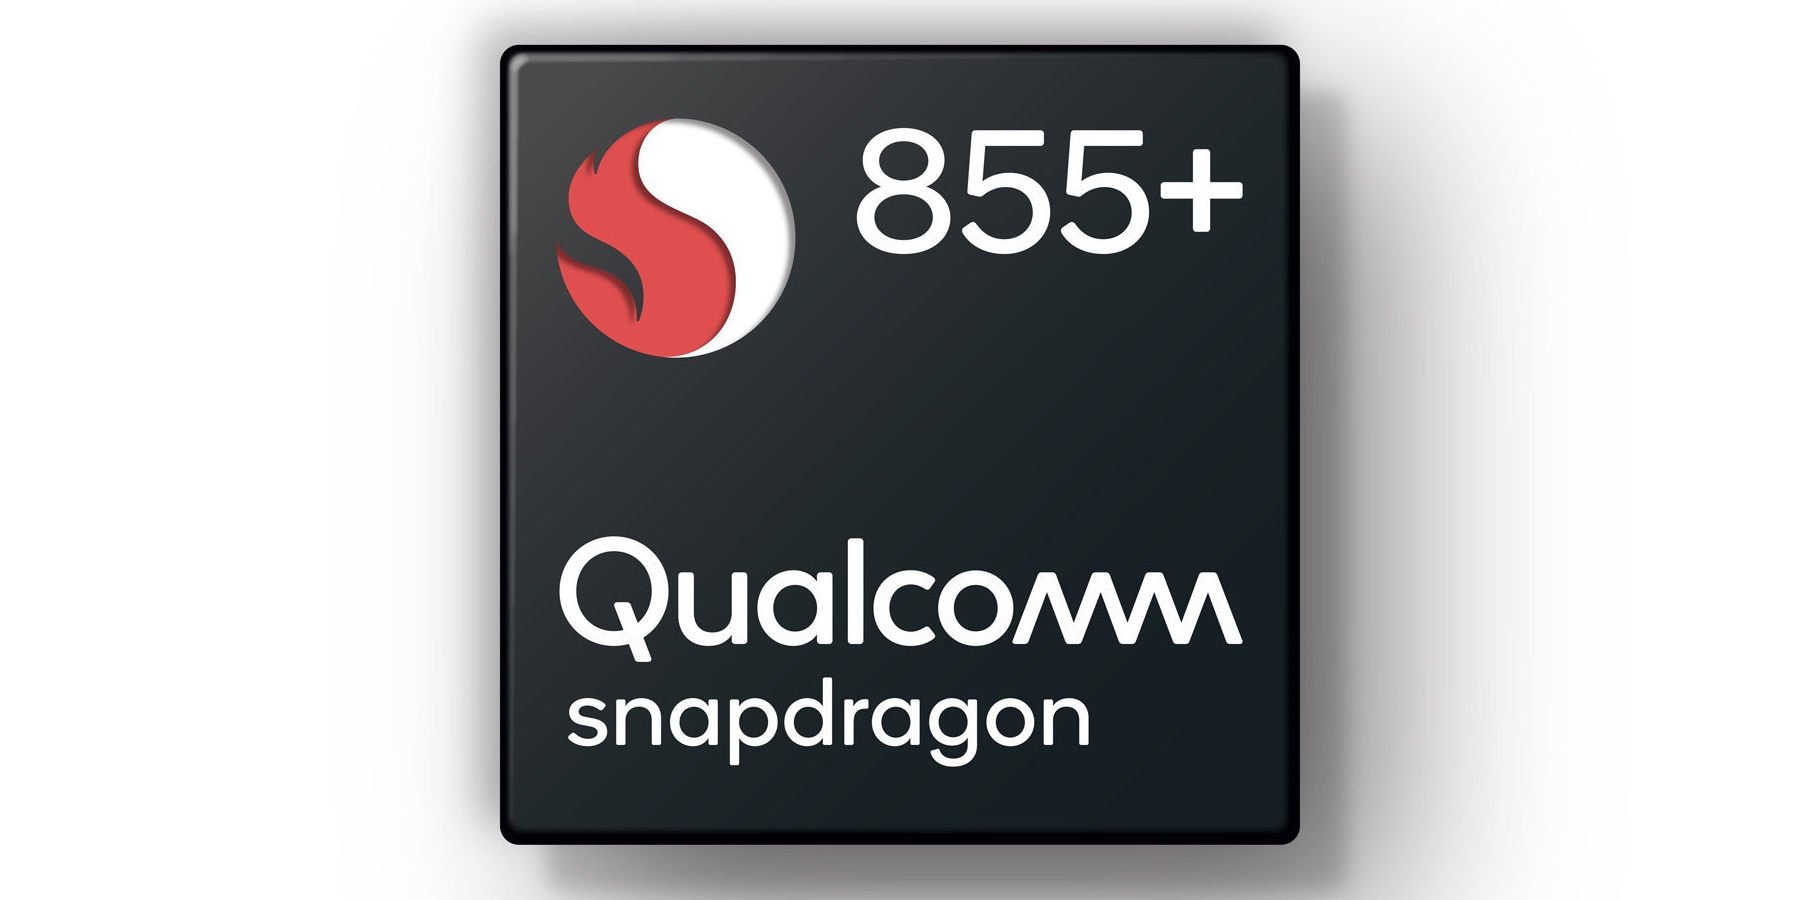 Qualcomm-Snapdragon-855-Plus